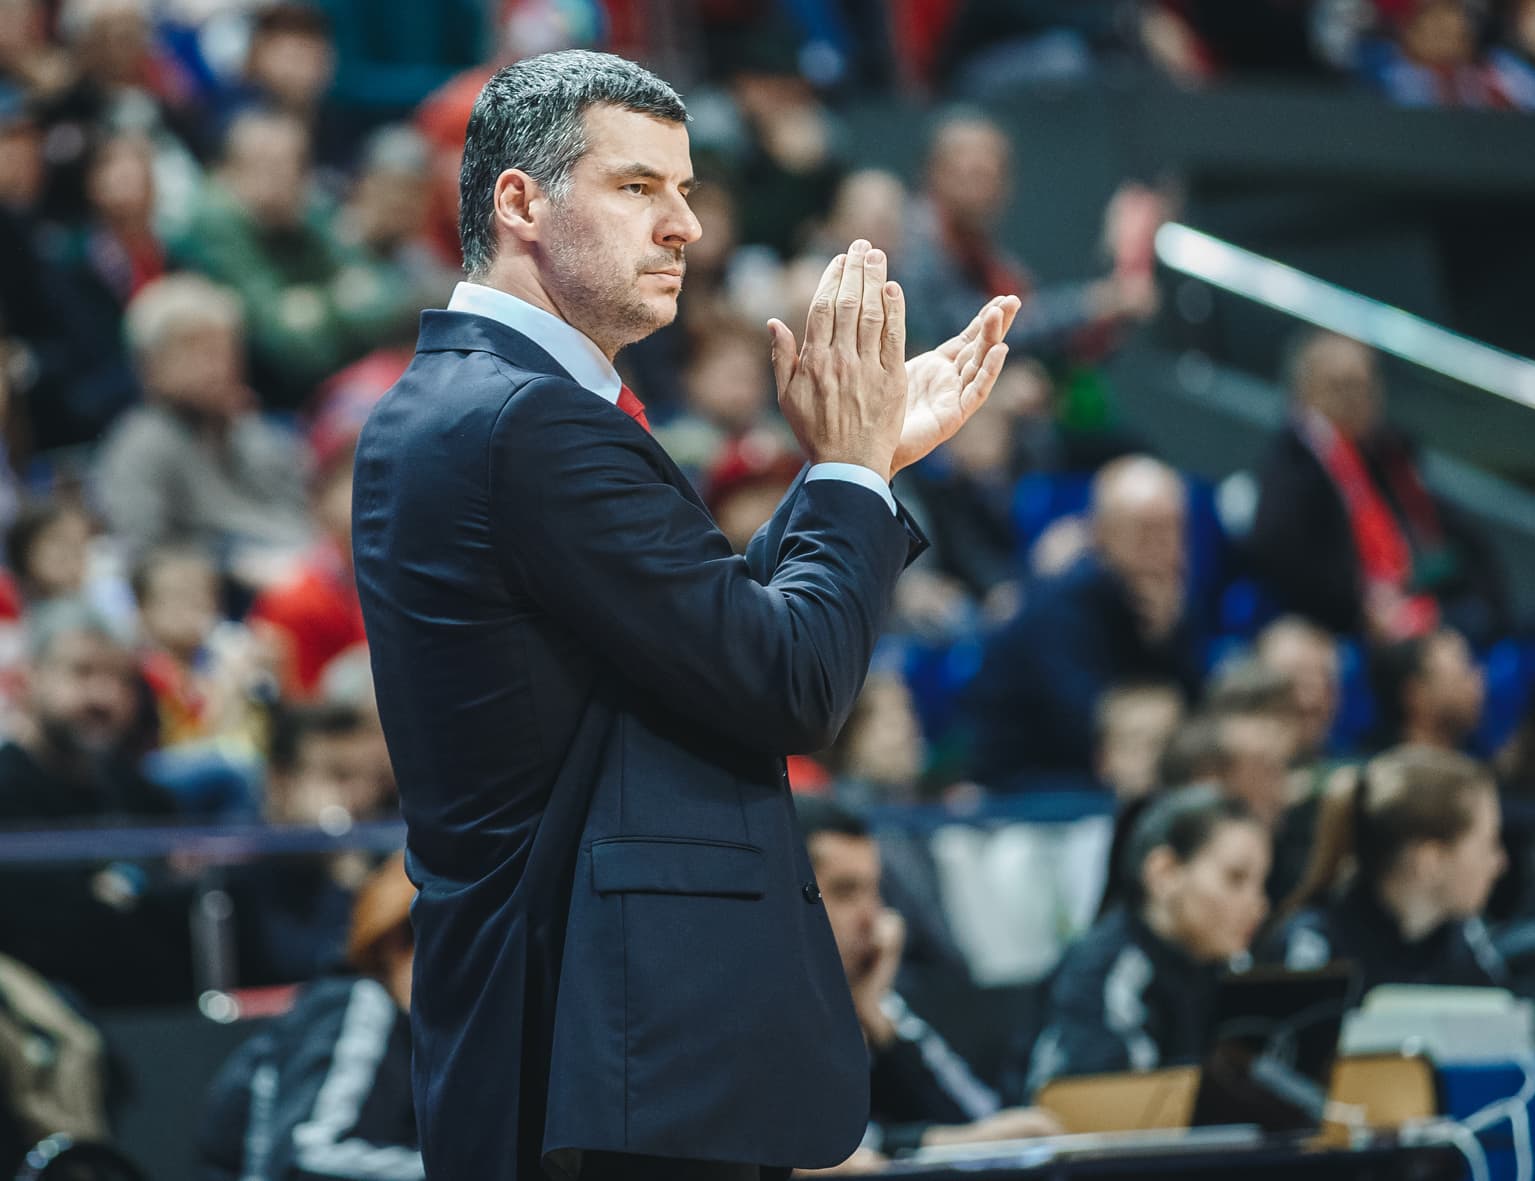 Владе Йованович – главный тренер «Локо» до конца сезона